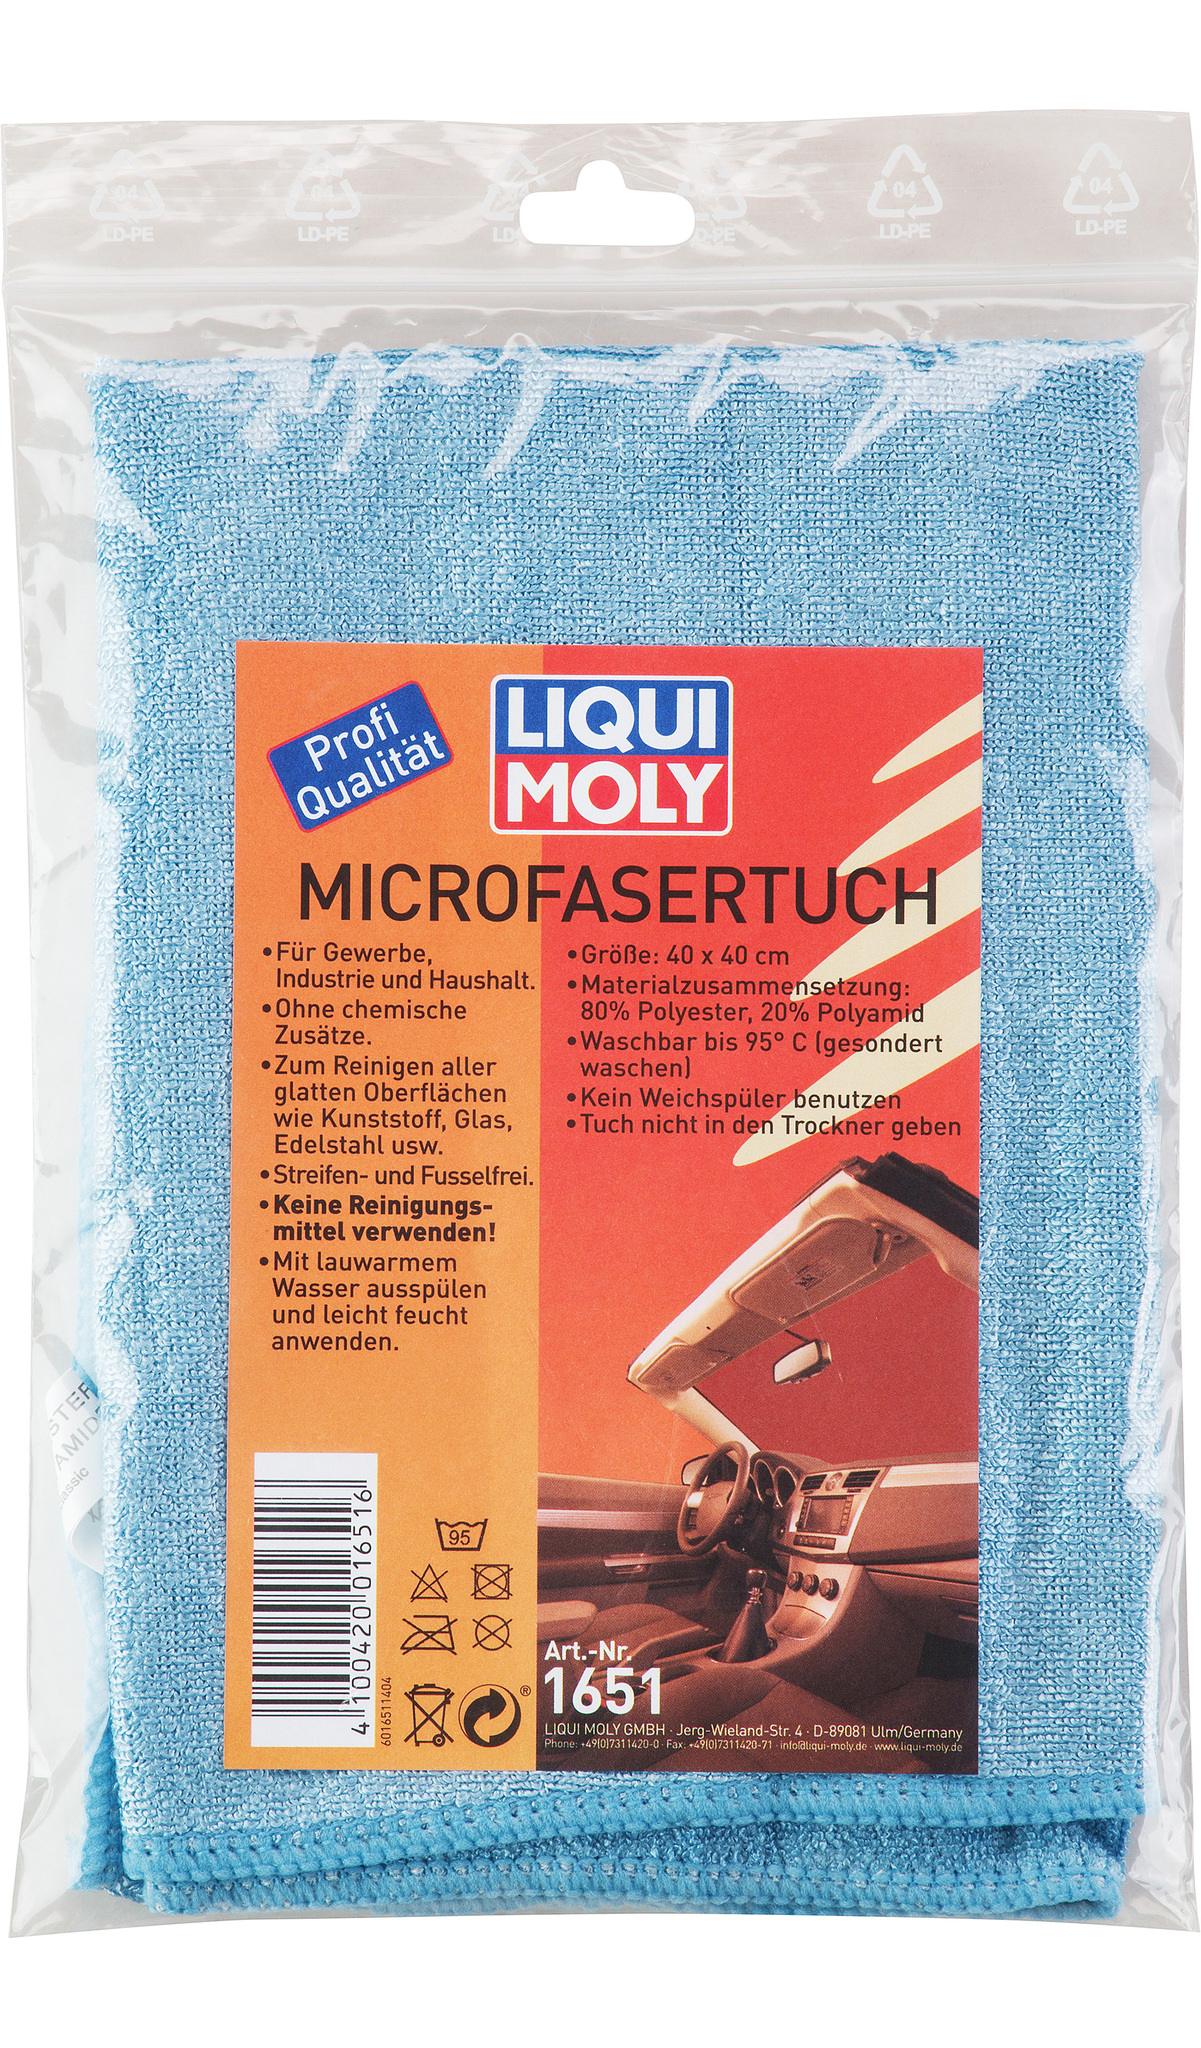 Liqui Moly Microfasertuch Универсальный платок из микрофибры